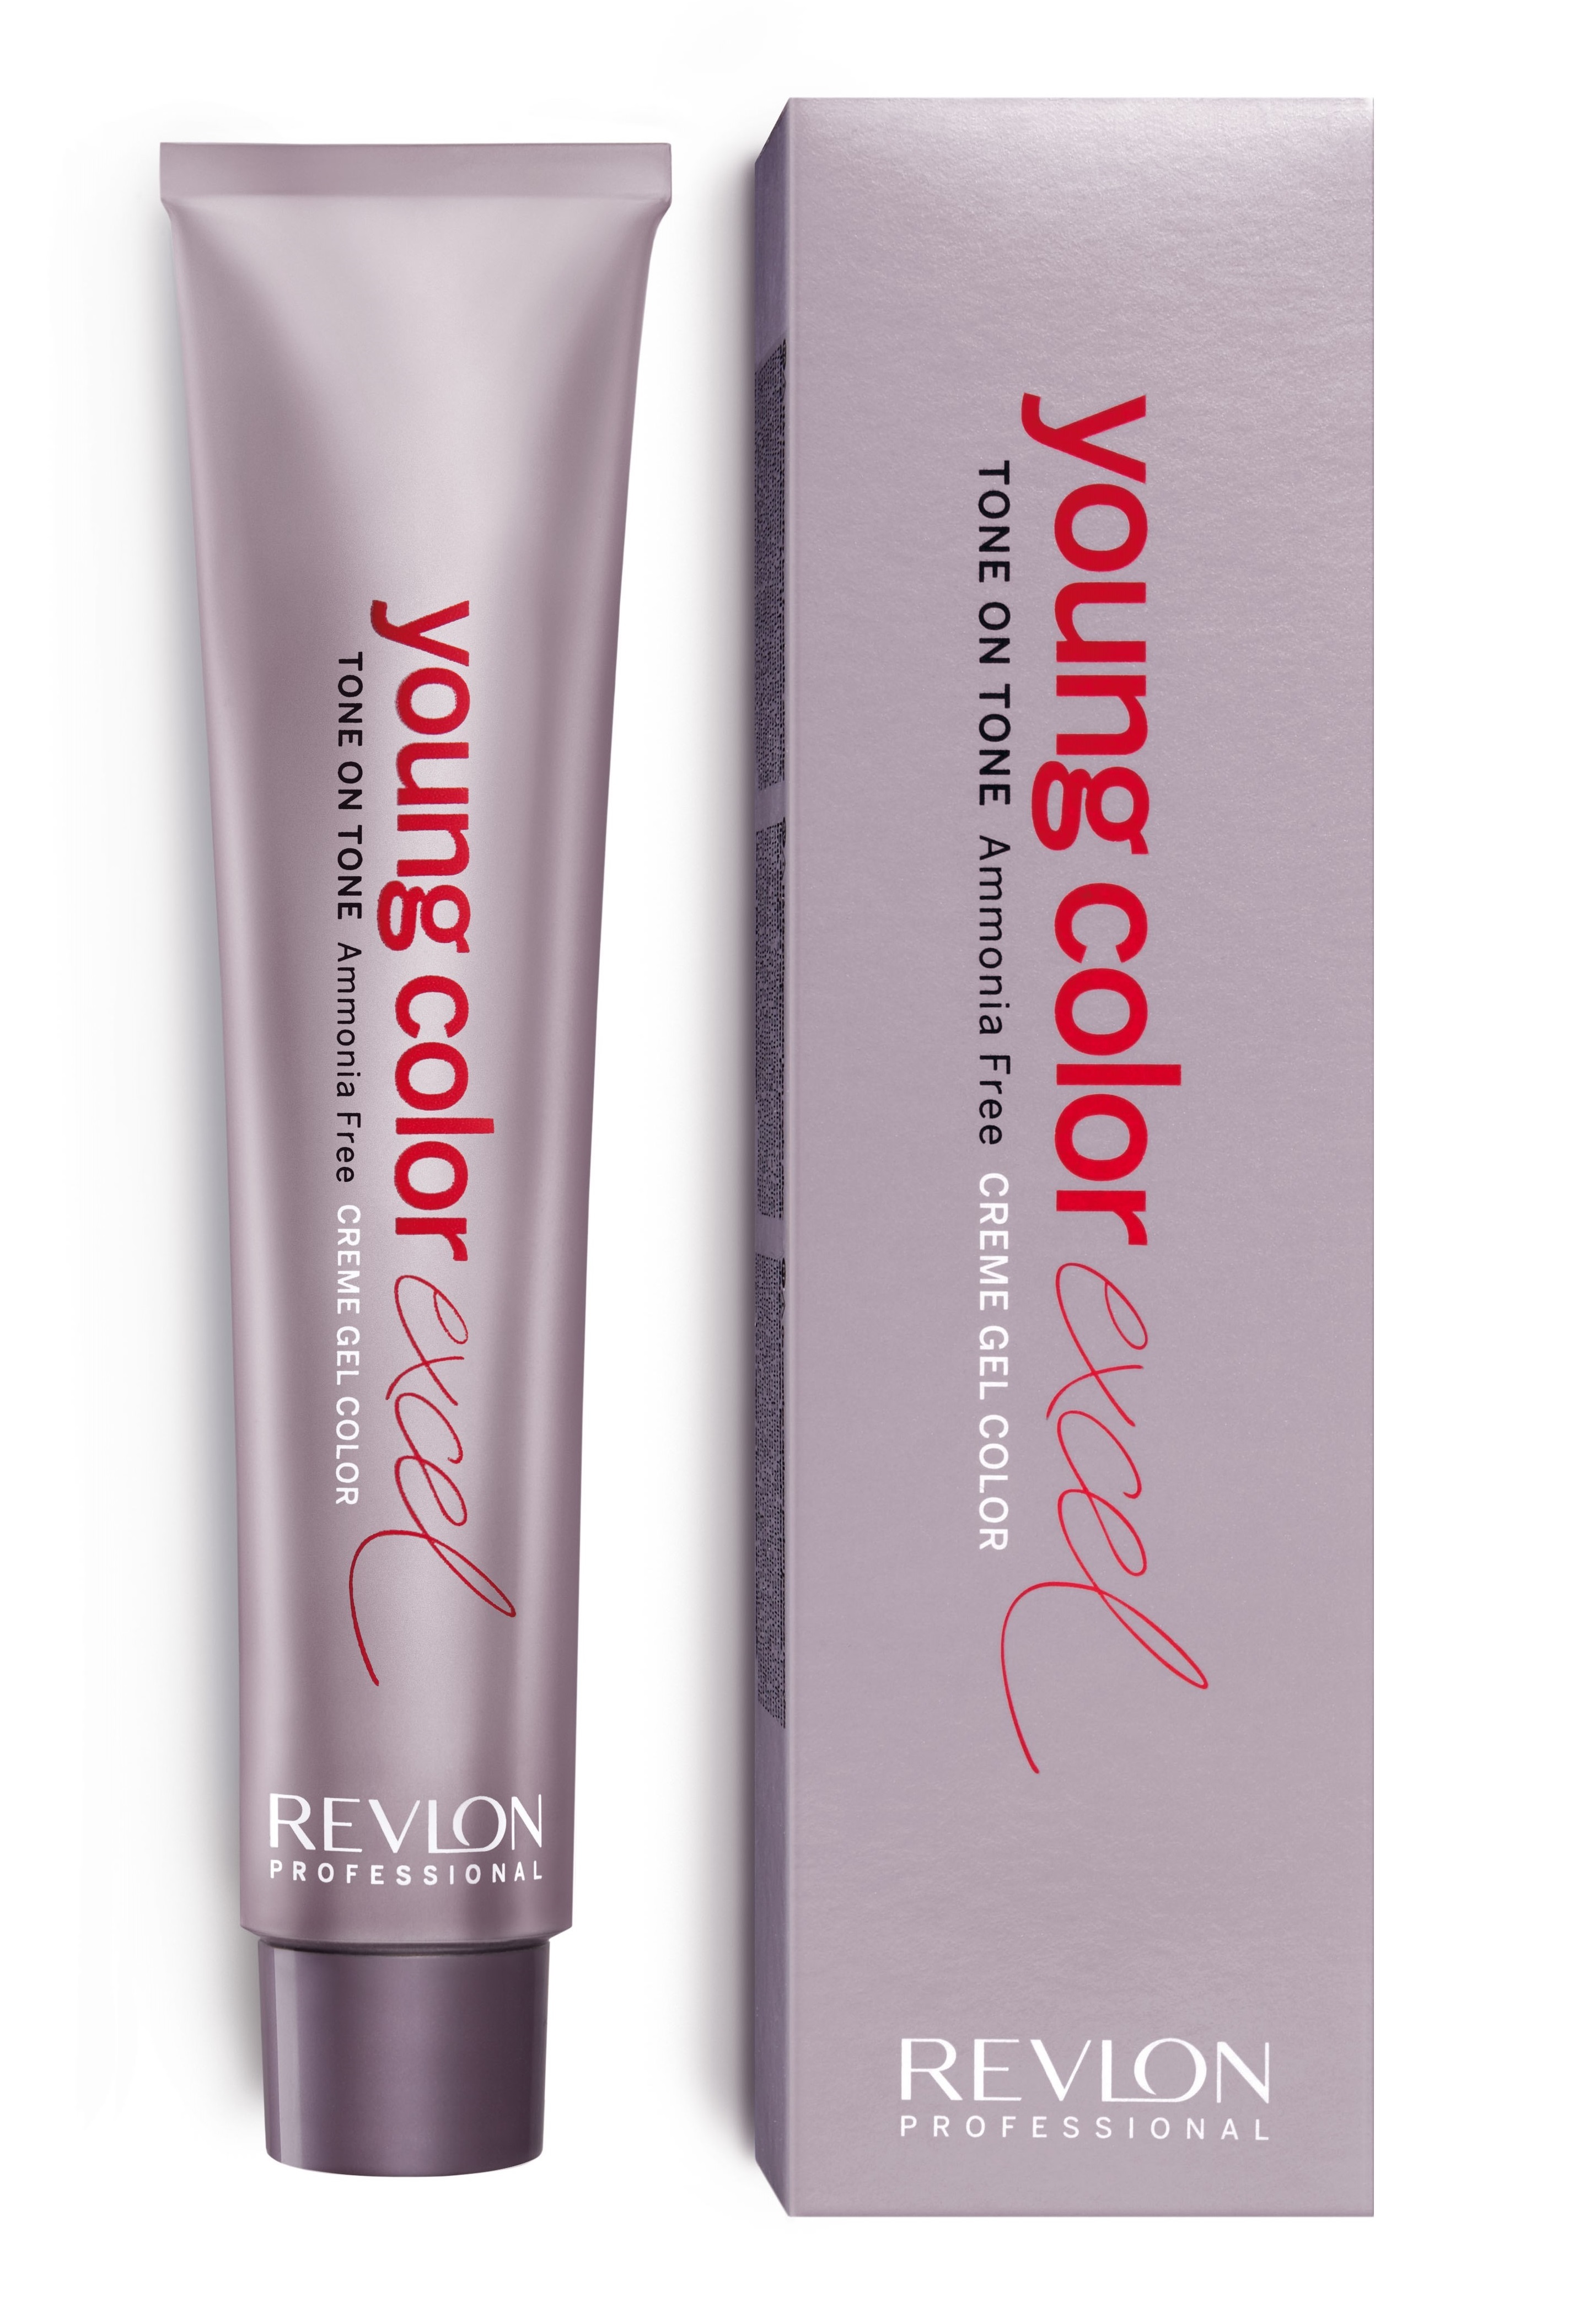 Краска для волос Revlon Professional Color Excel Tone ON Tone, без аммиака 7.1 materia new обновленный стойкий кремовый краситель для волос 8705 mmt металлик 80 г линия make up